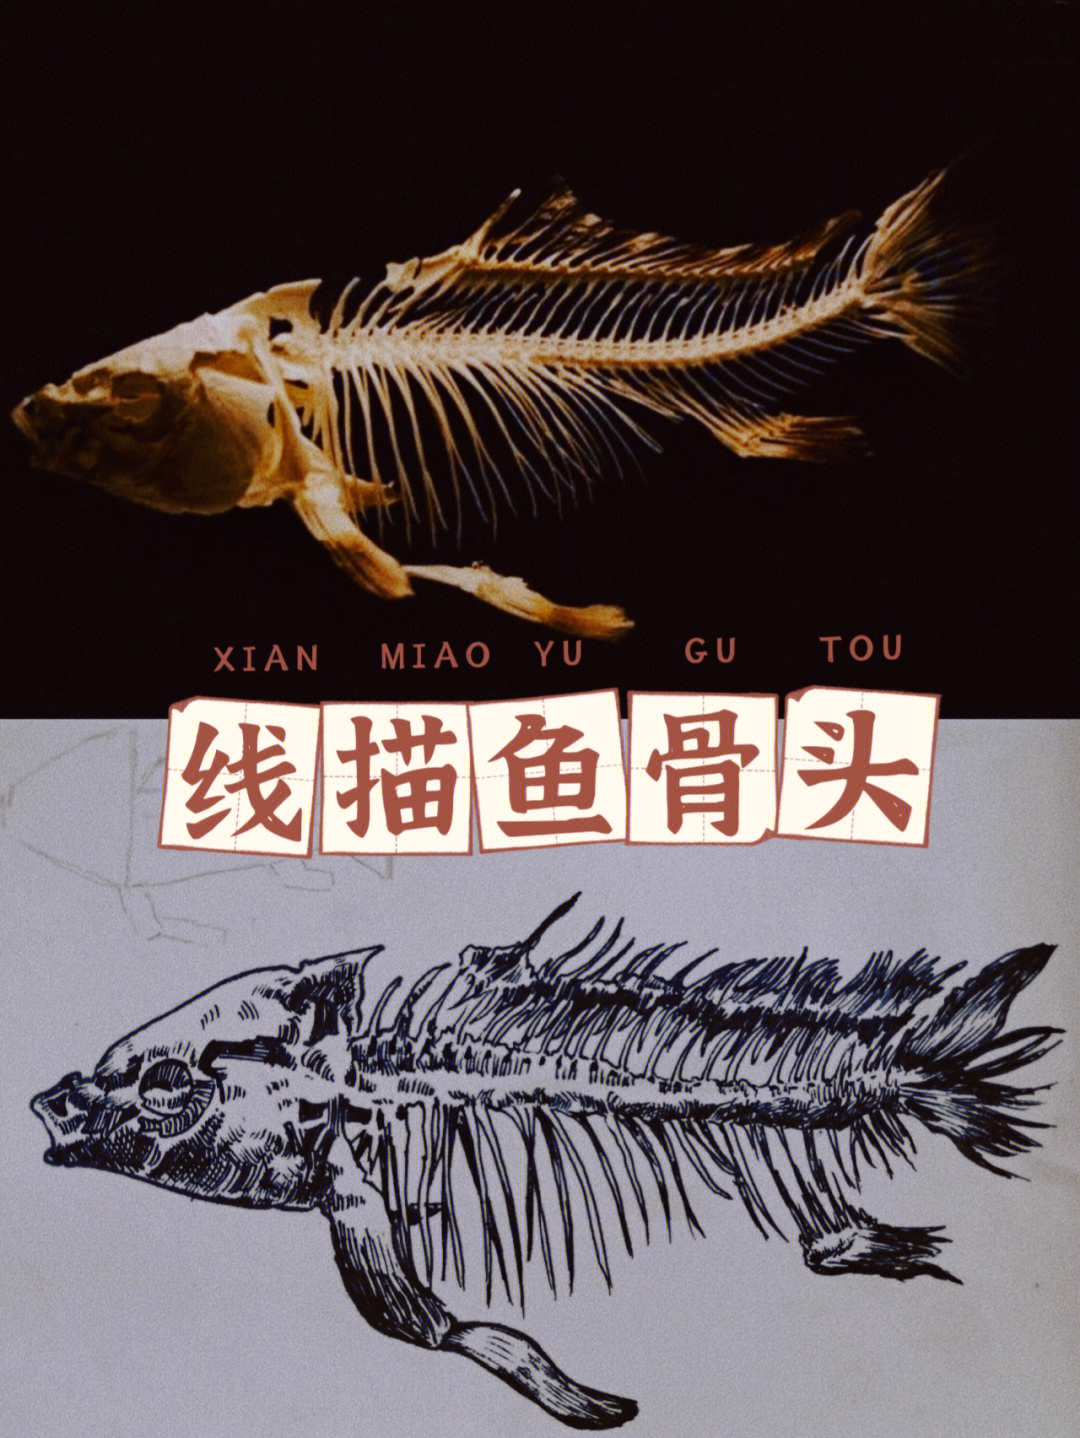 鱼骨素描画法图片